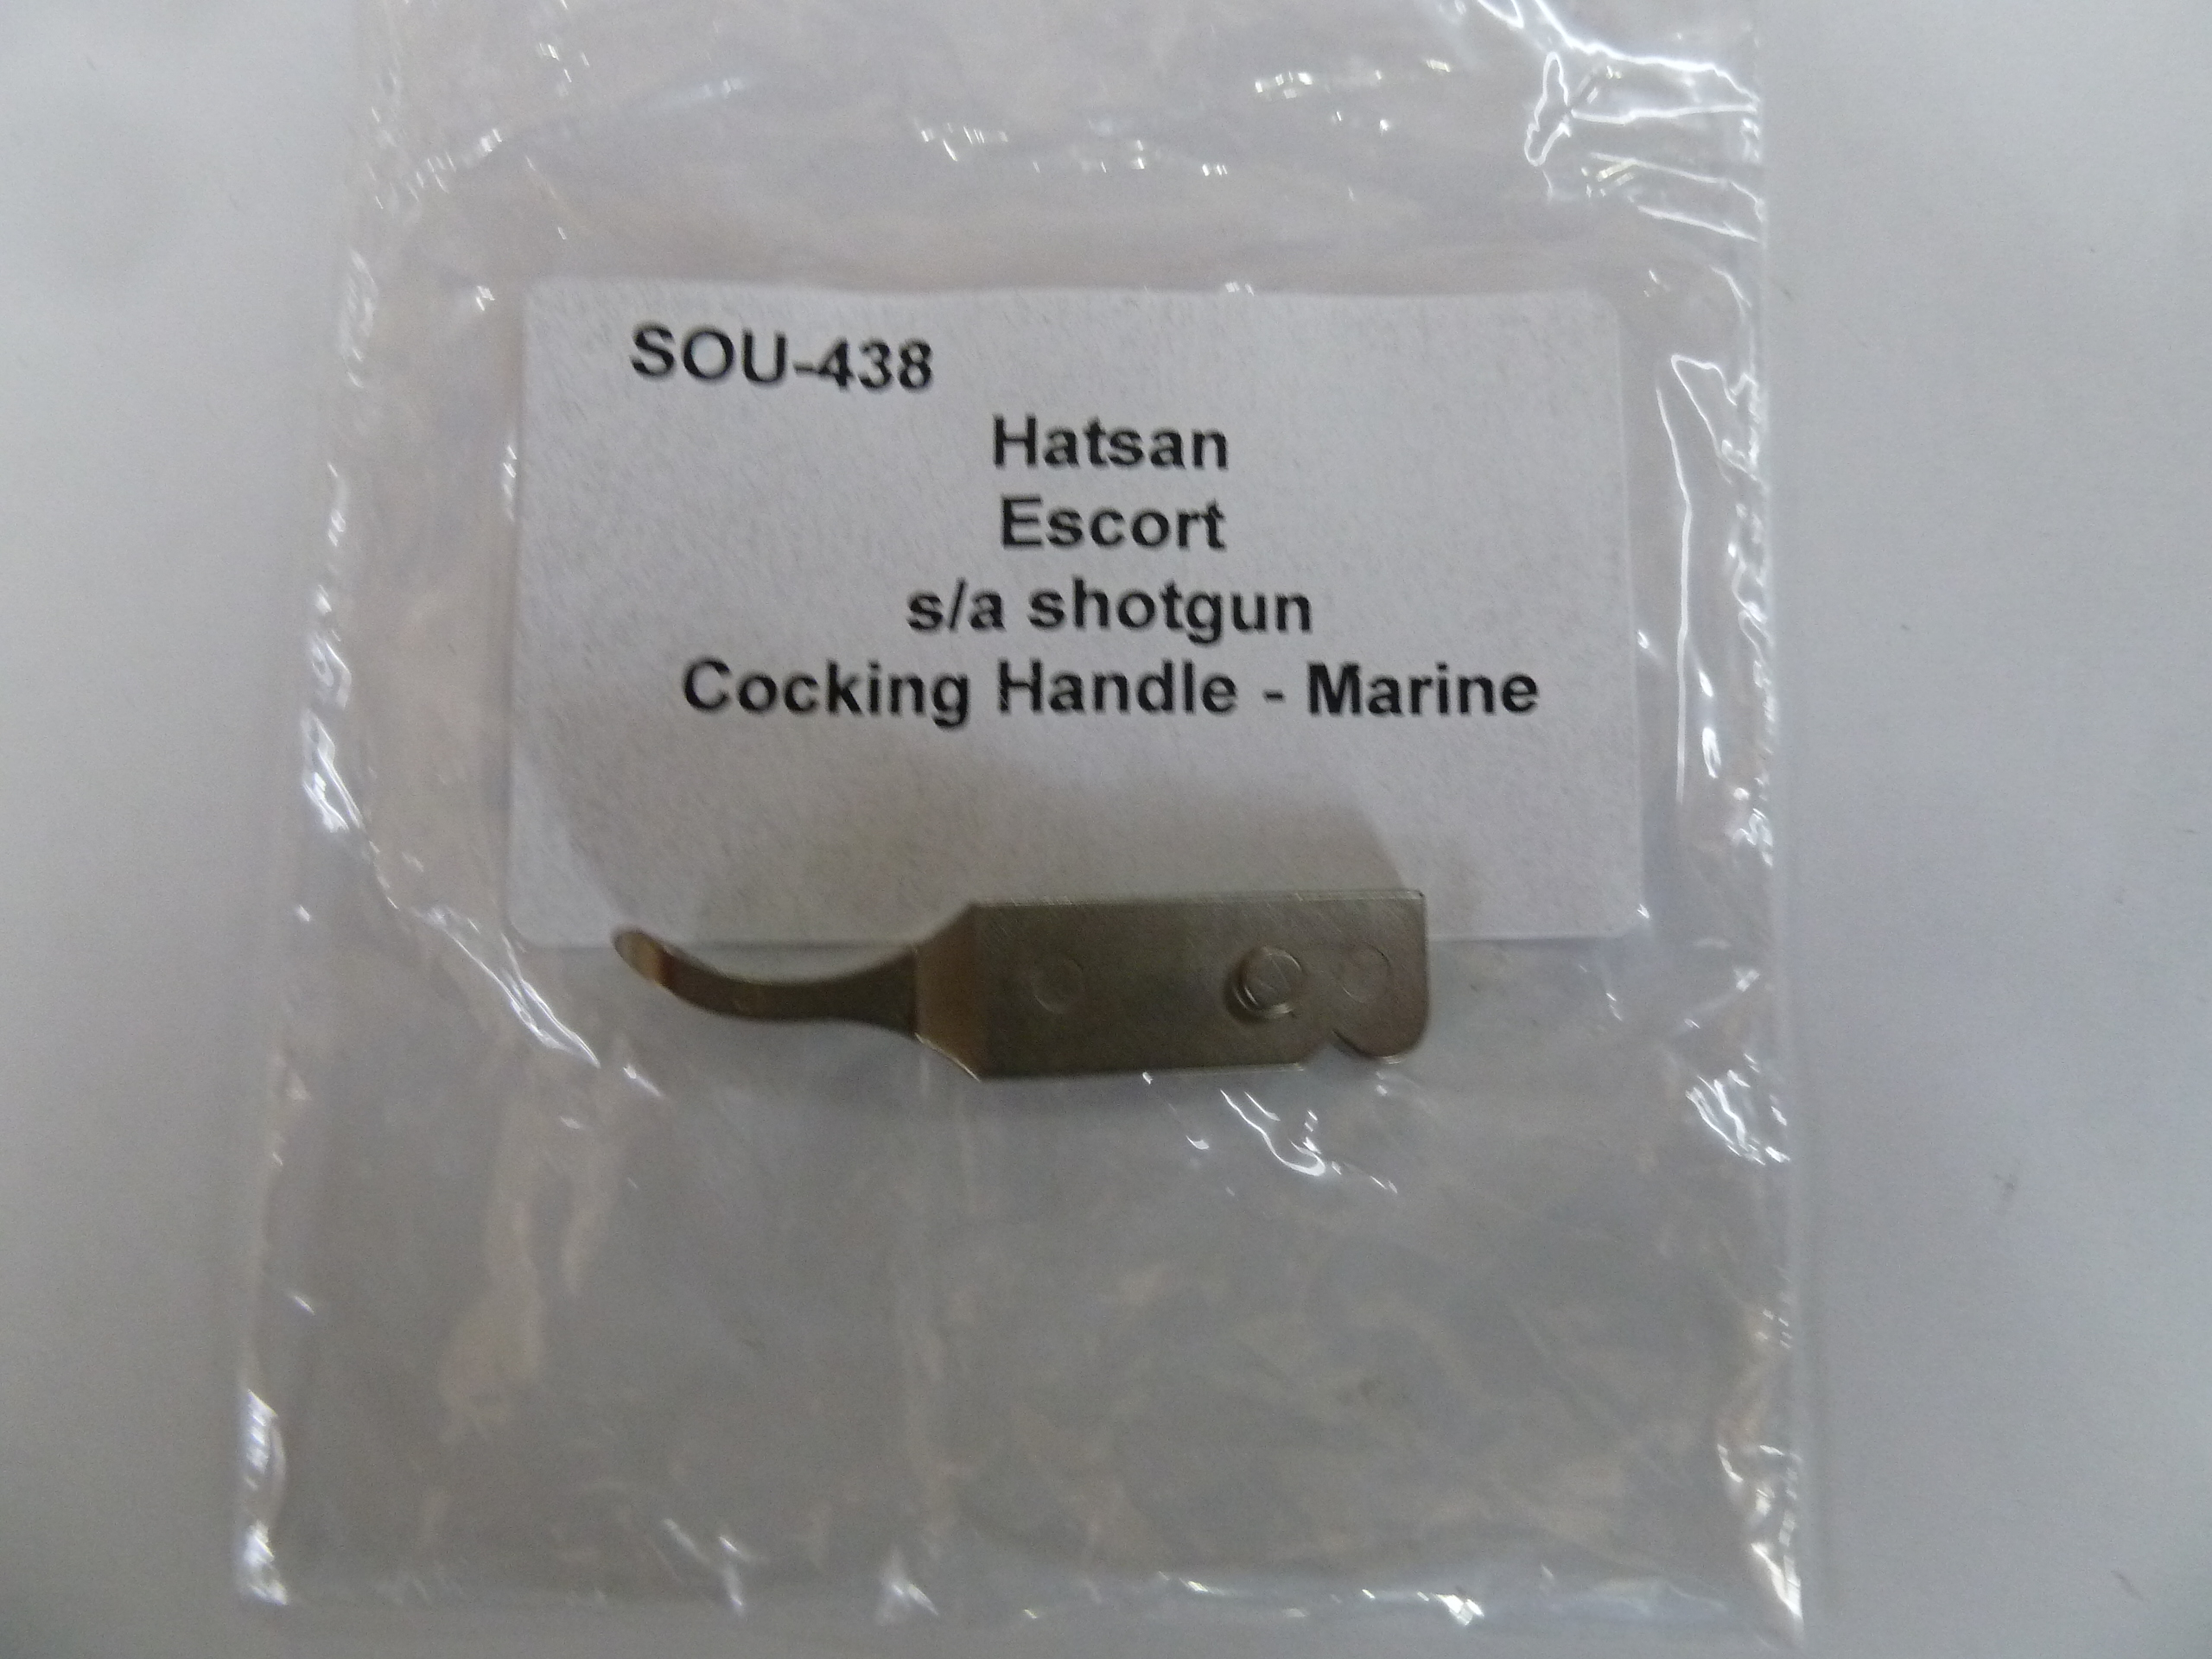 SOU-438 Hatsan Escort 12 gauge sa shotgun cocking handle marine (1)